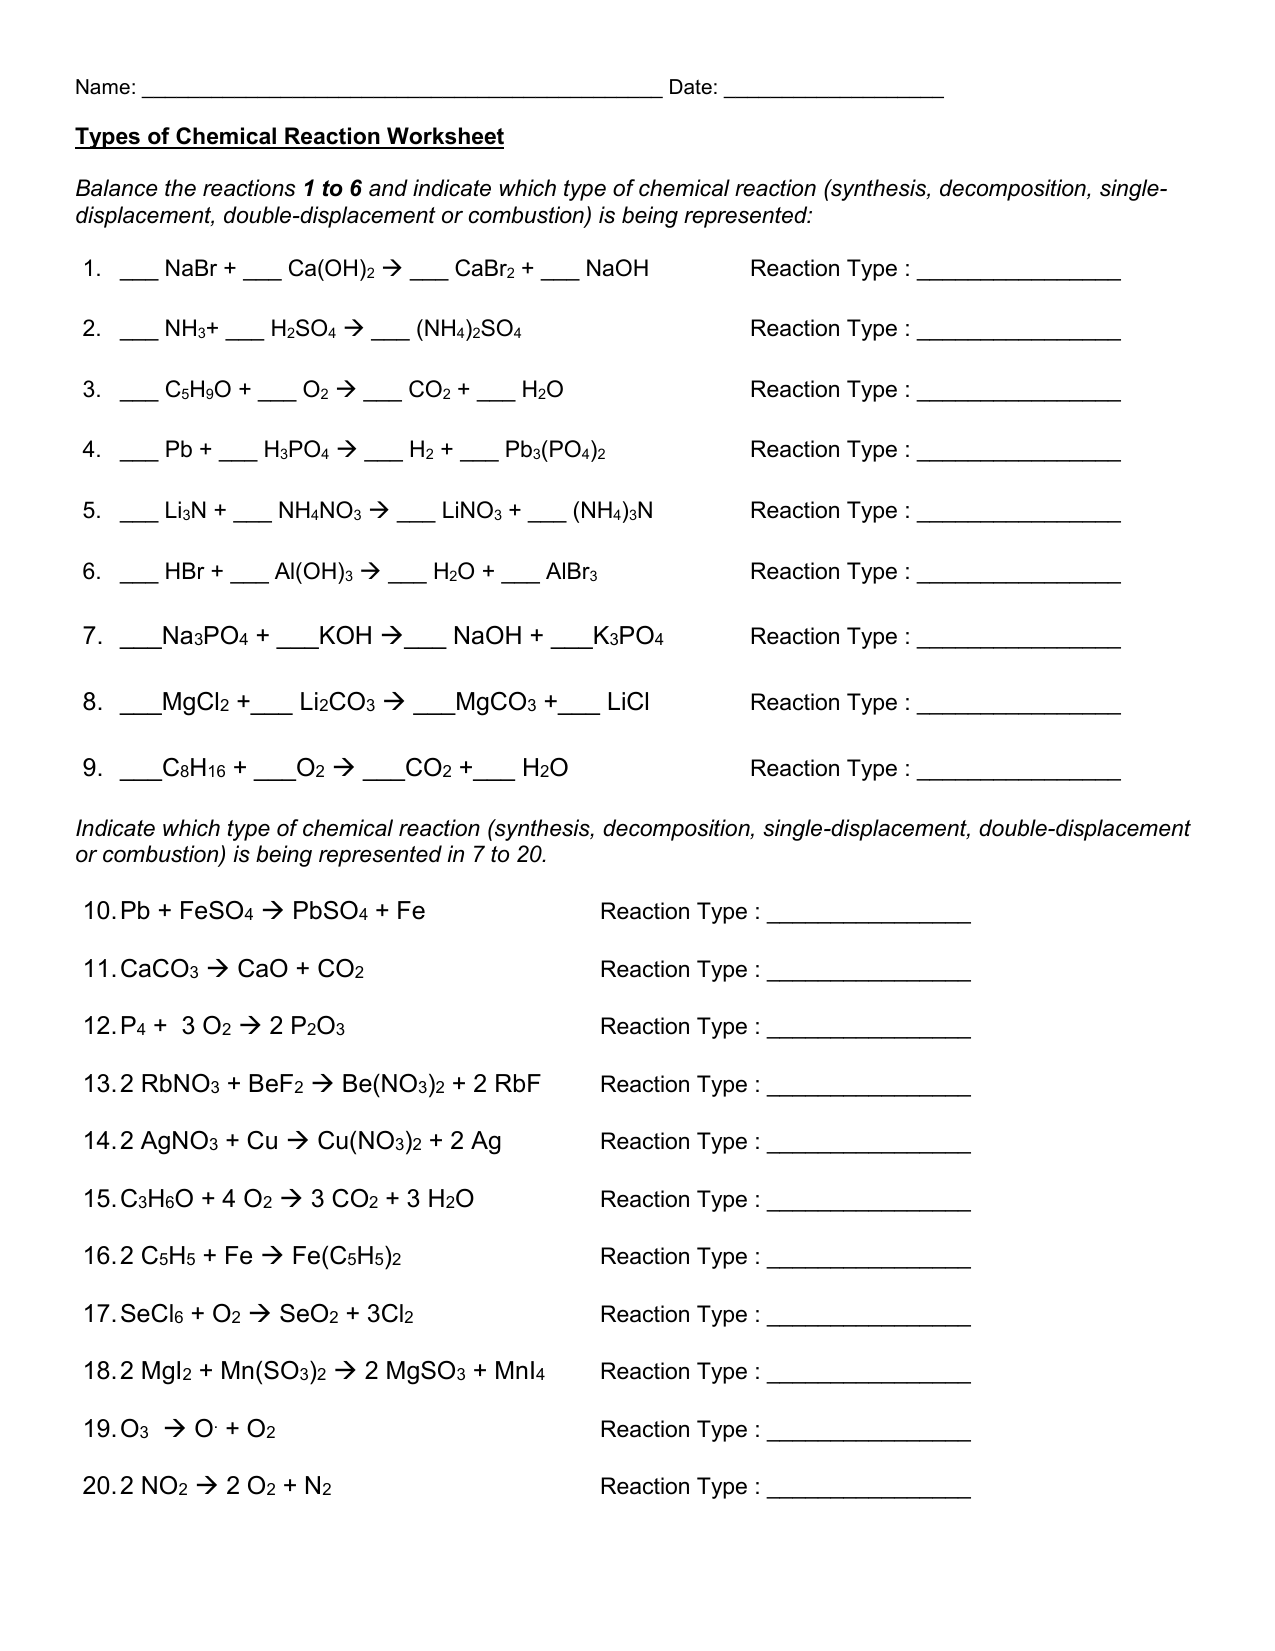 Types of Chemical Reaction Worksheet Regarding Types Of Reactions Worksheet